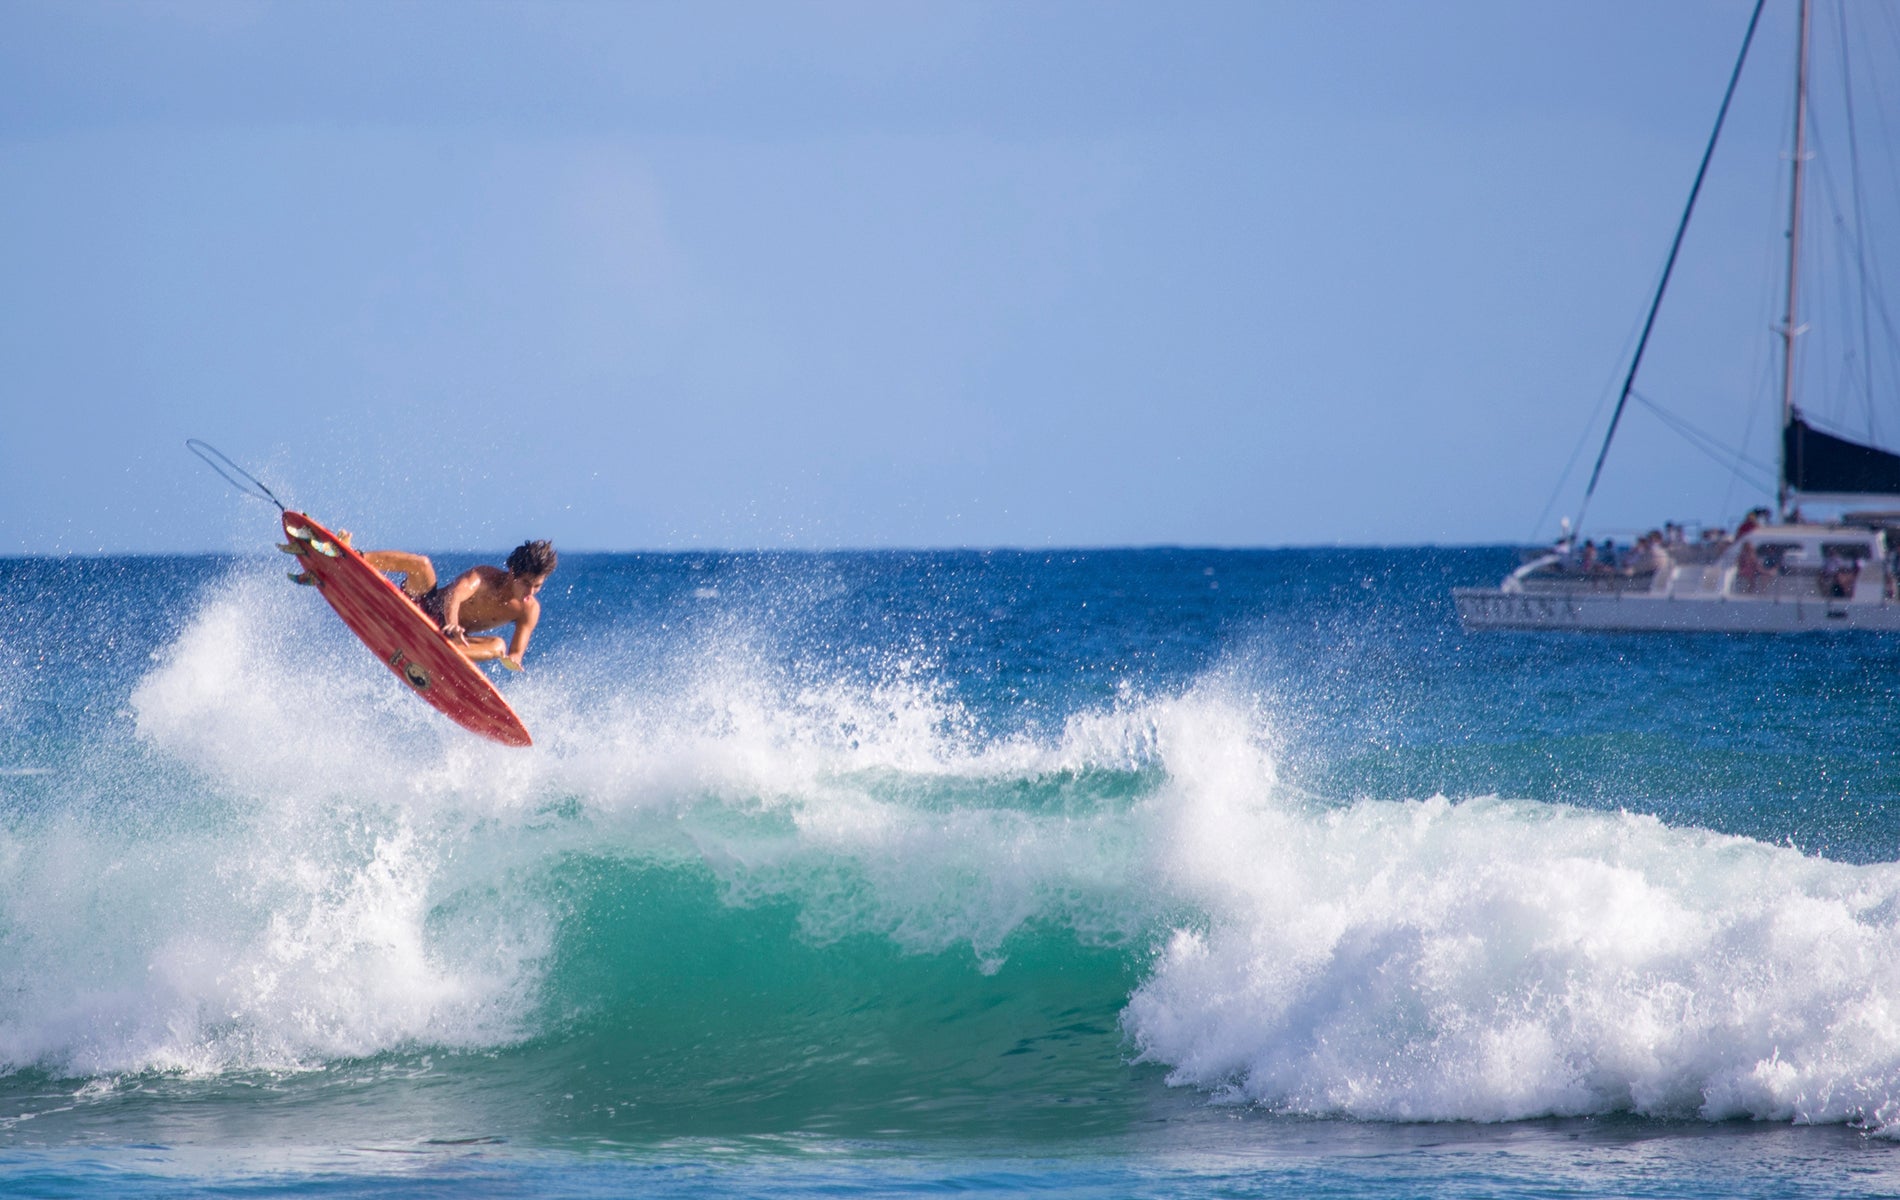 Hawaii surfer, Noah Kawaguchi navigating an aerial maneuver